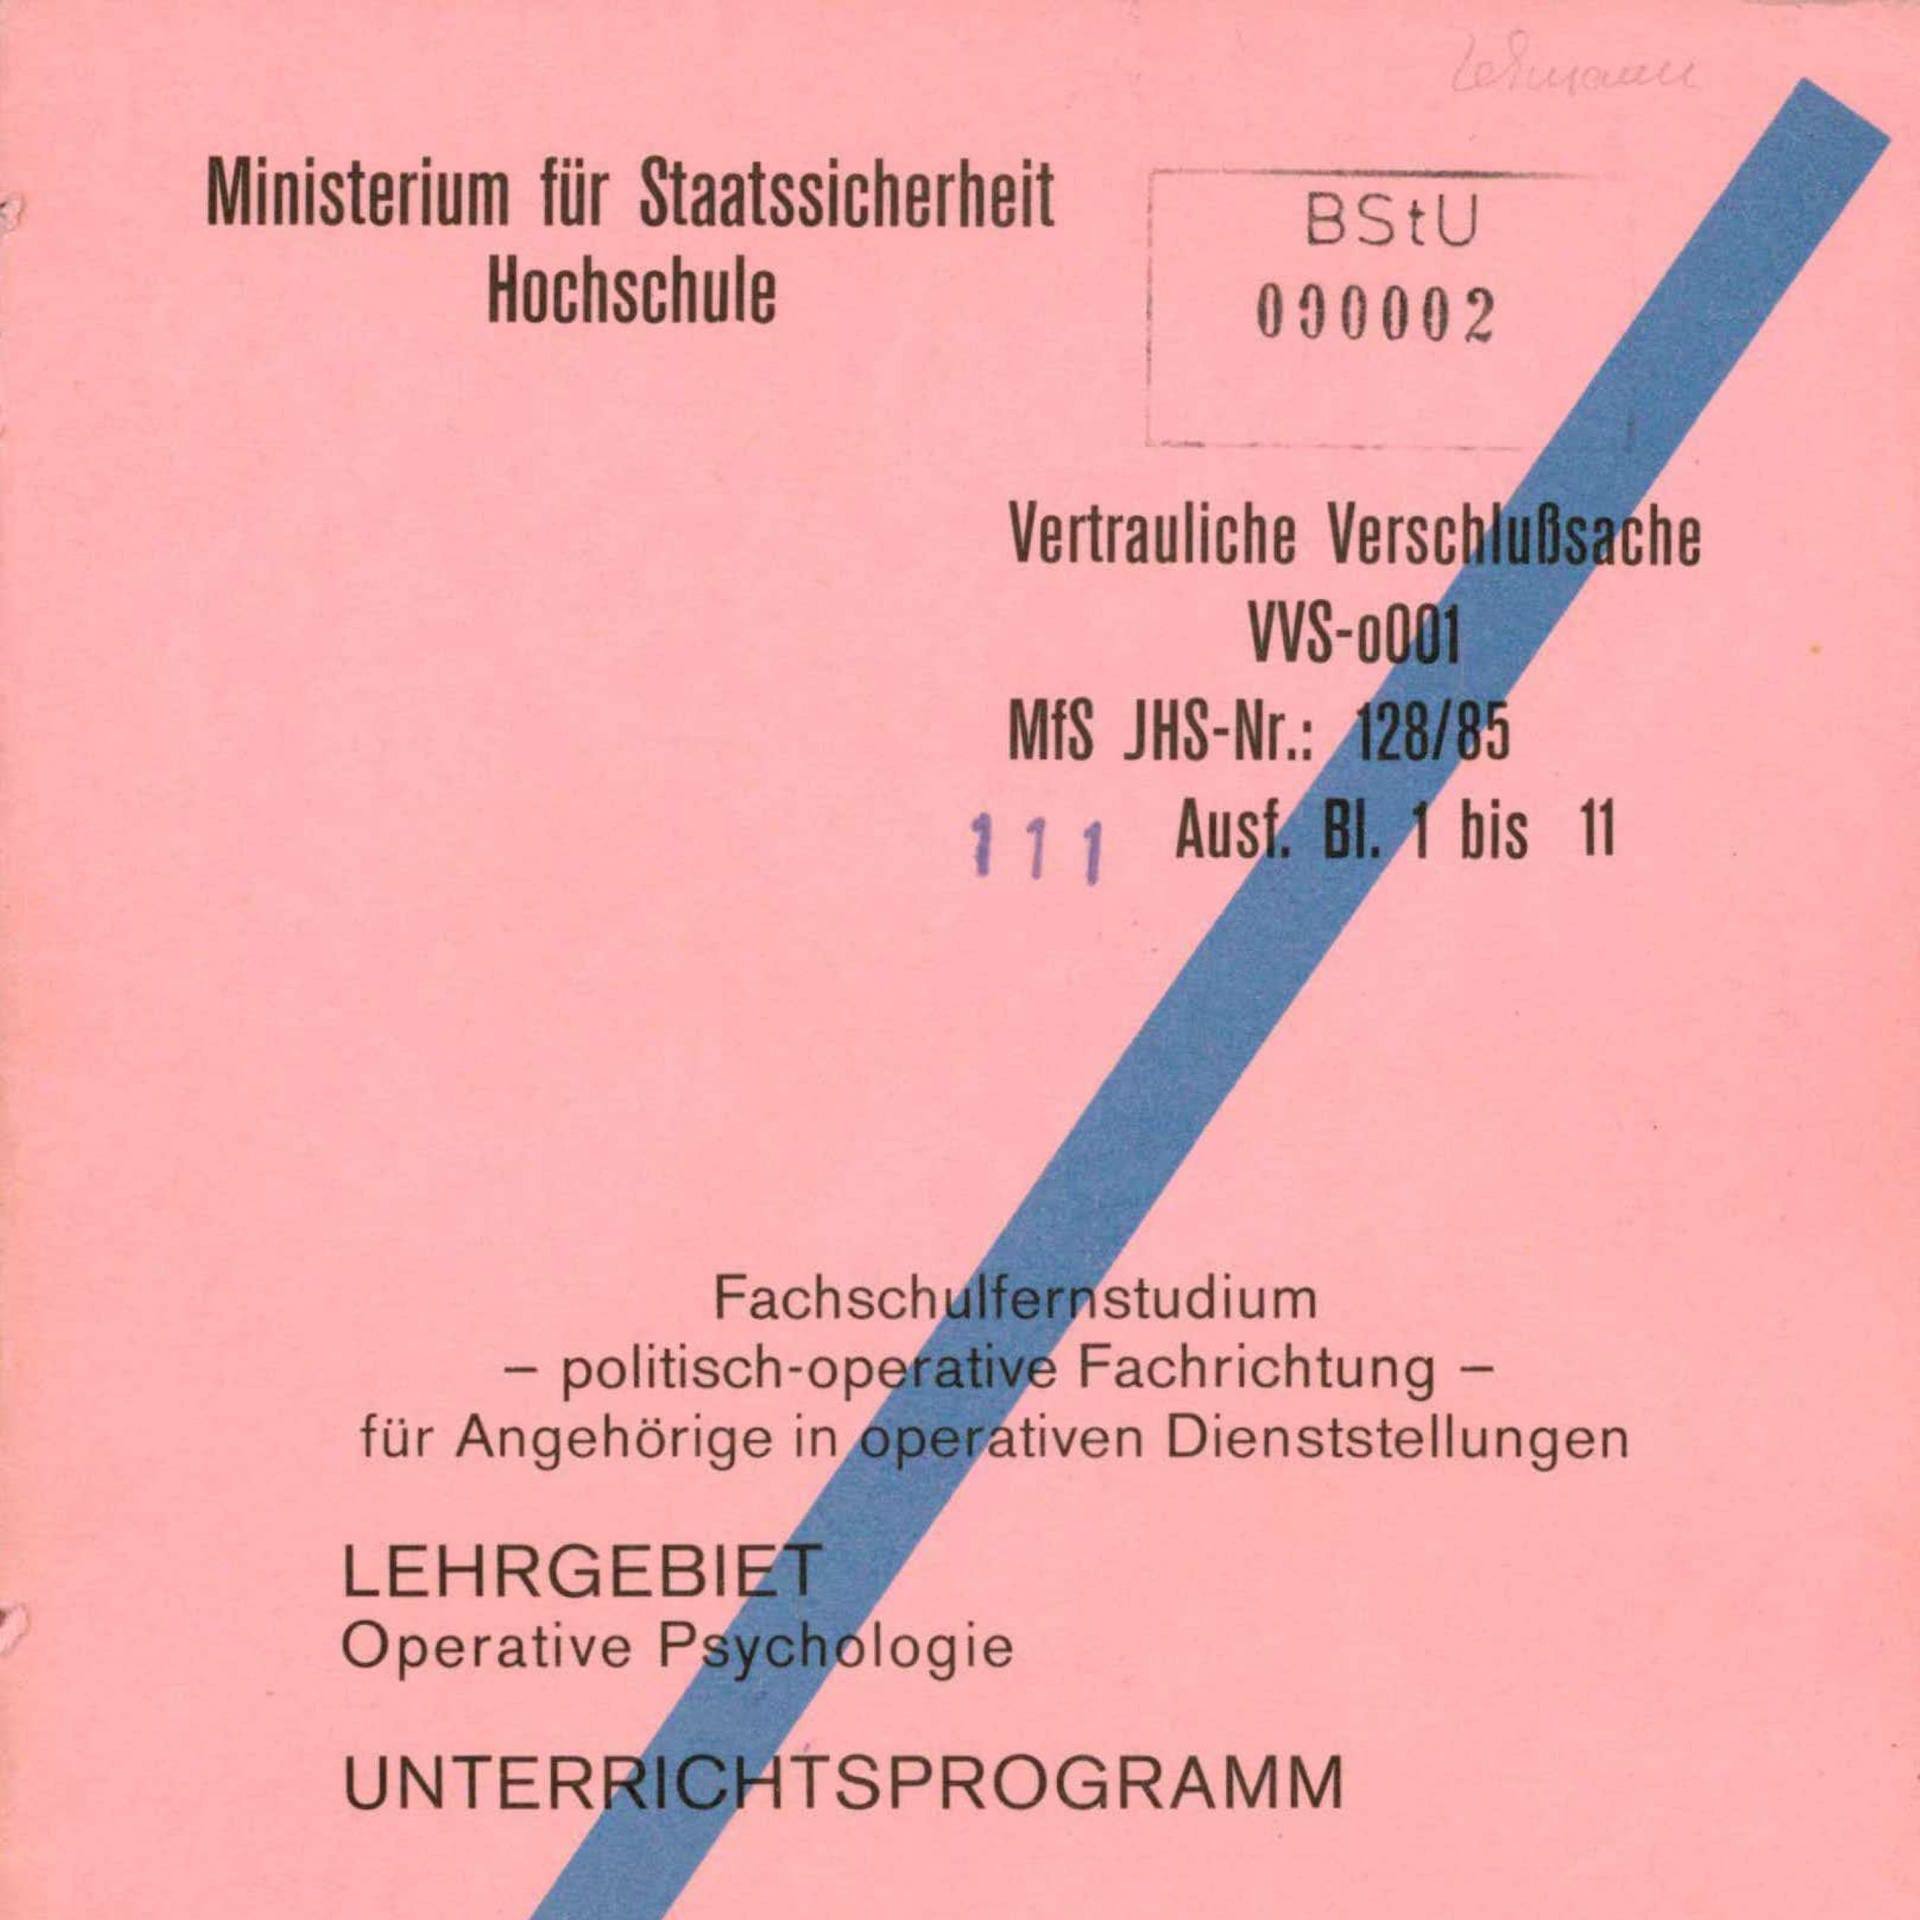 Die geheime Stasi-Akademie für Operative Psychologie | Archivradio-Gespräch